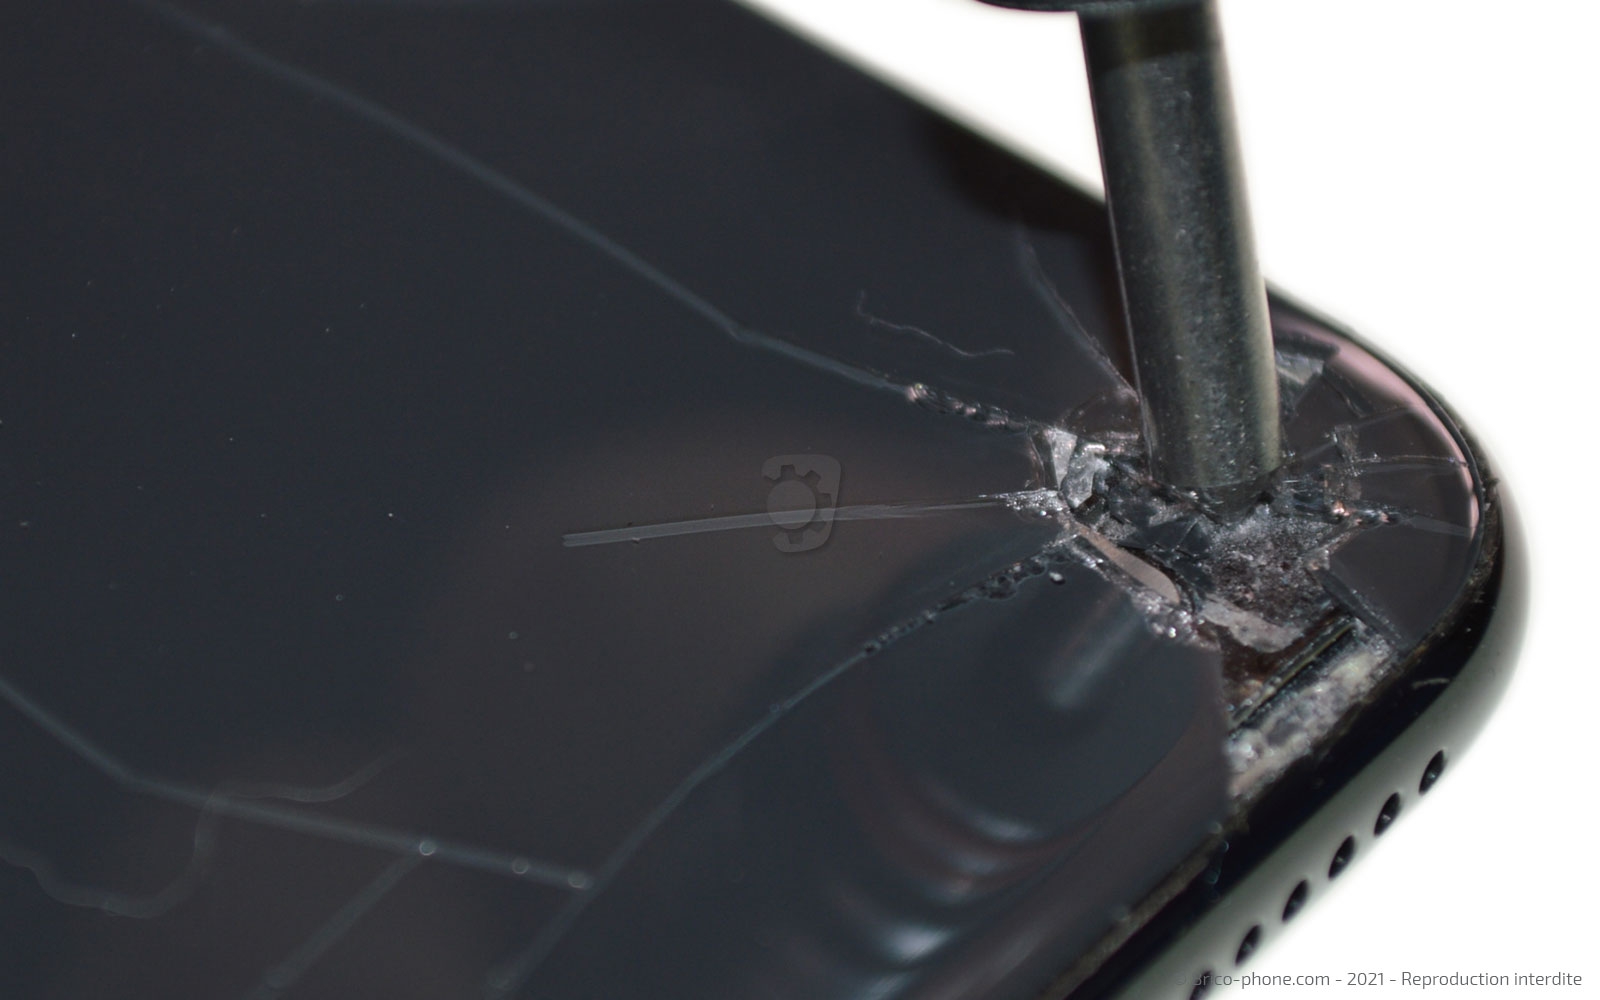 Forfait réparation remplacement vitre arrière iPhone X / XS - Macinfo